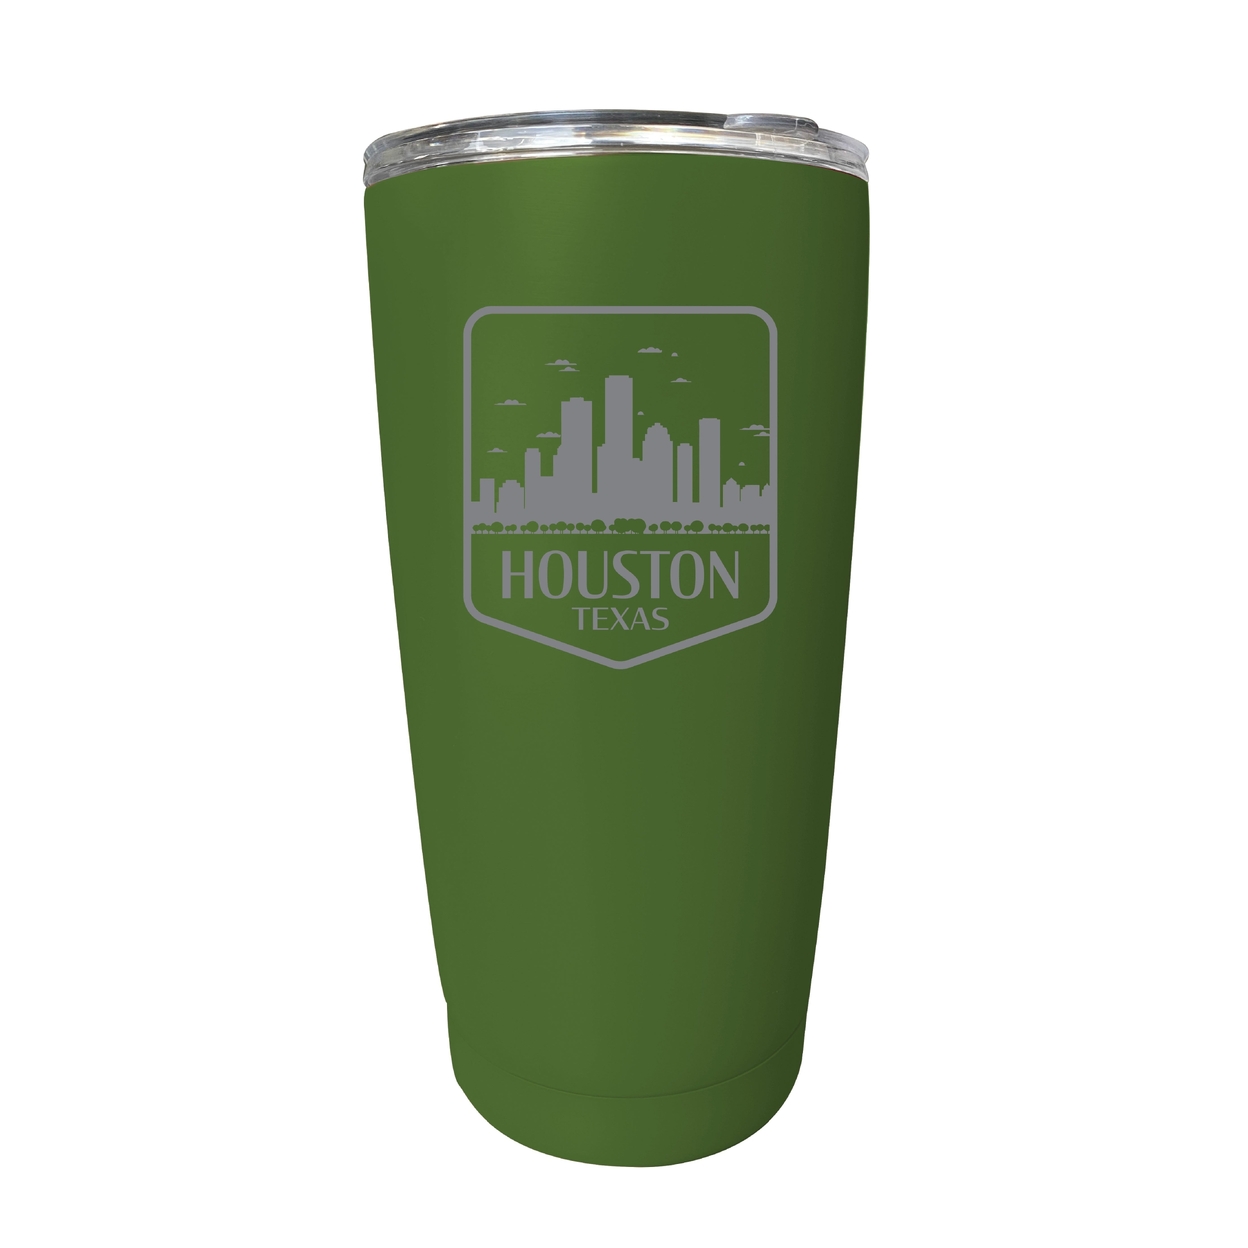 Houston Texas Souvenir 16 Oz Engraved Stainless Steel Insulated Tumbler - Green,,Single Unit